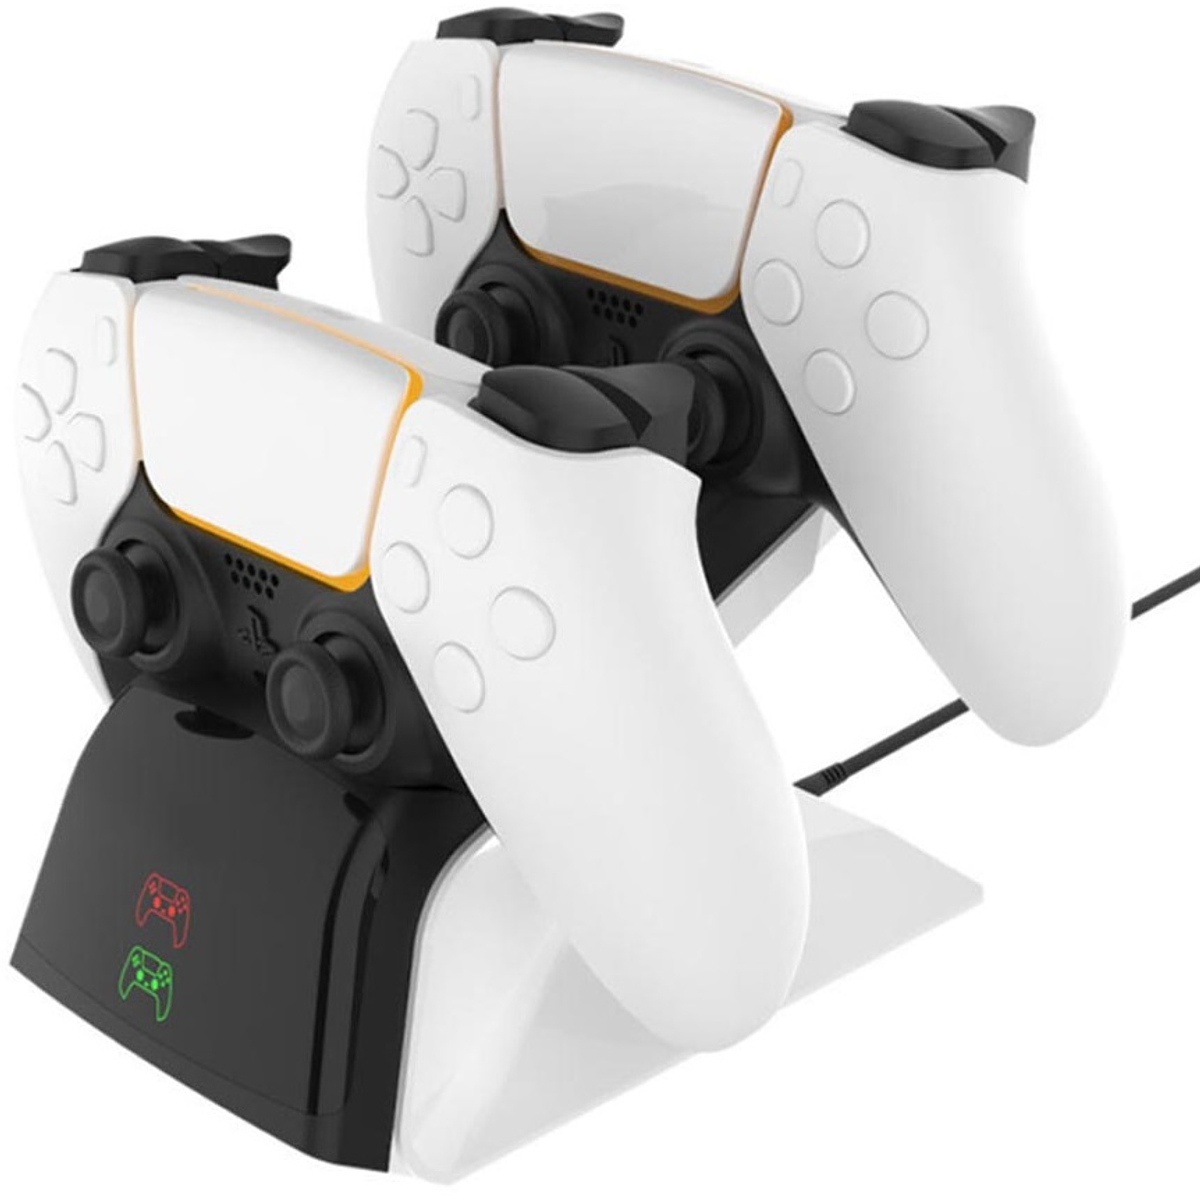 Comando PS5 Dualsense Branco + Jogo FIFA 23 (Código de Descarga na Caixa)